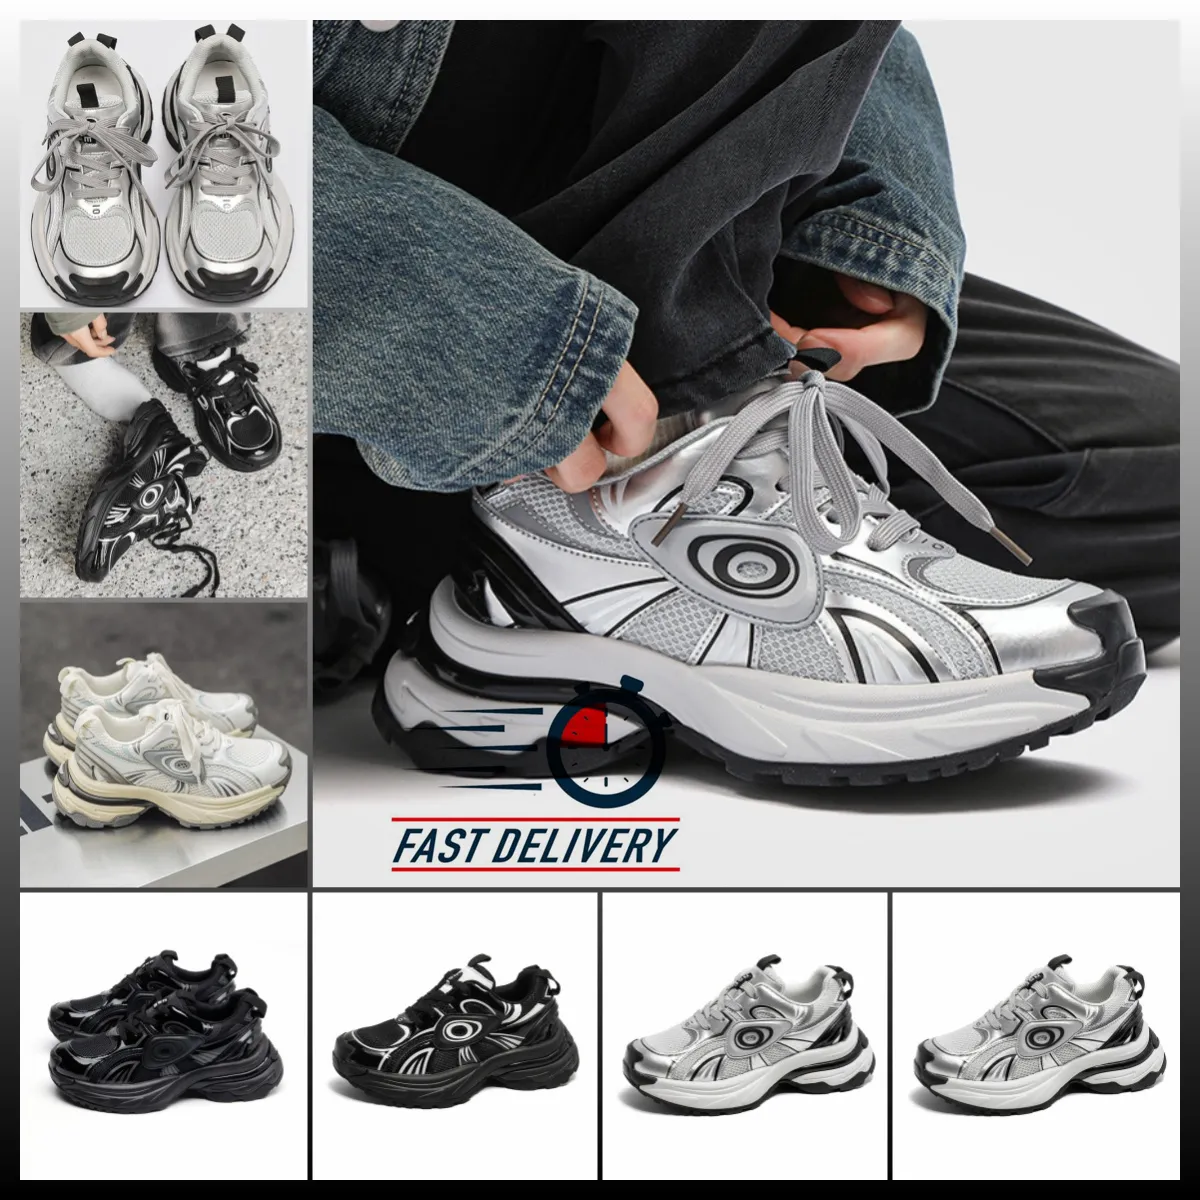 Chaussures de papa à semelles épaisses populaires Femmes Chine-Chic Casual Chaussures Sneakers blancs à lacets Livraison gratuits pour les jeunes AMOURS NOUVEAUX MENSEURS MEN